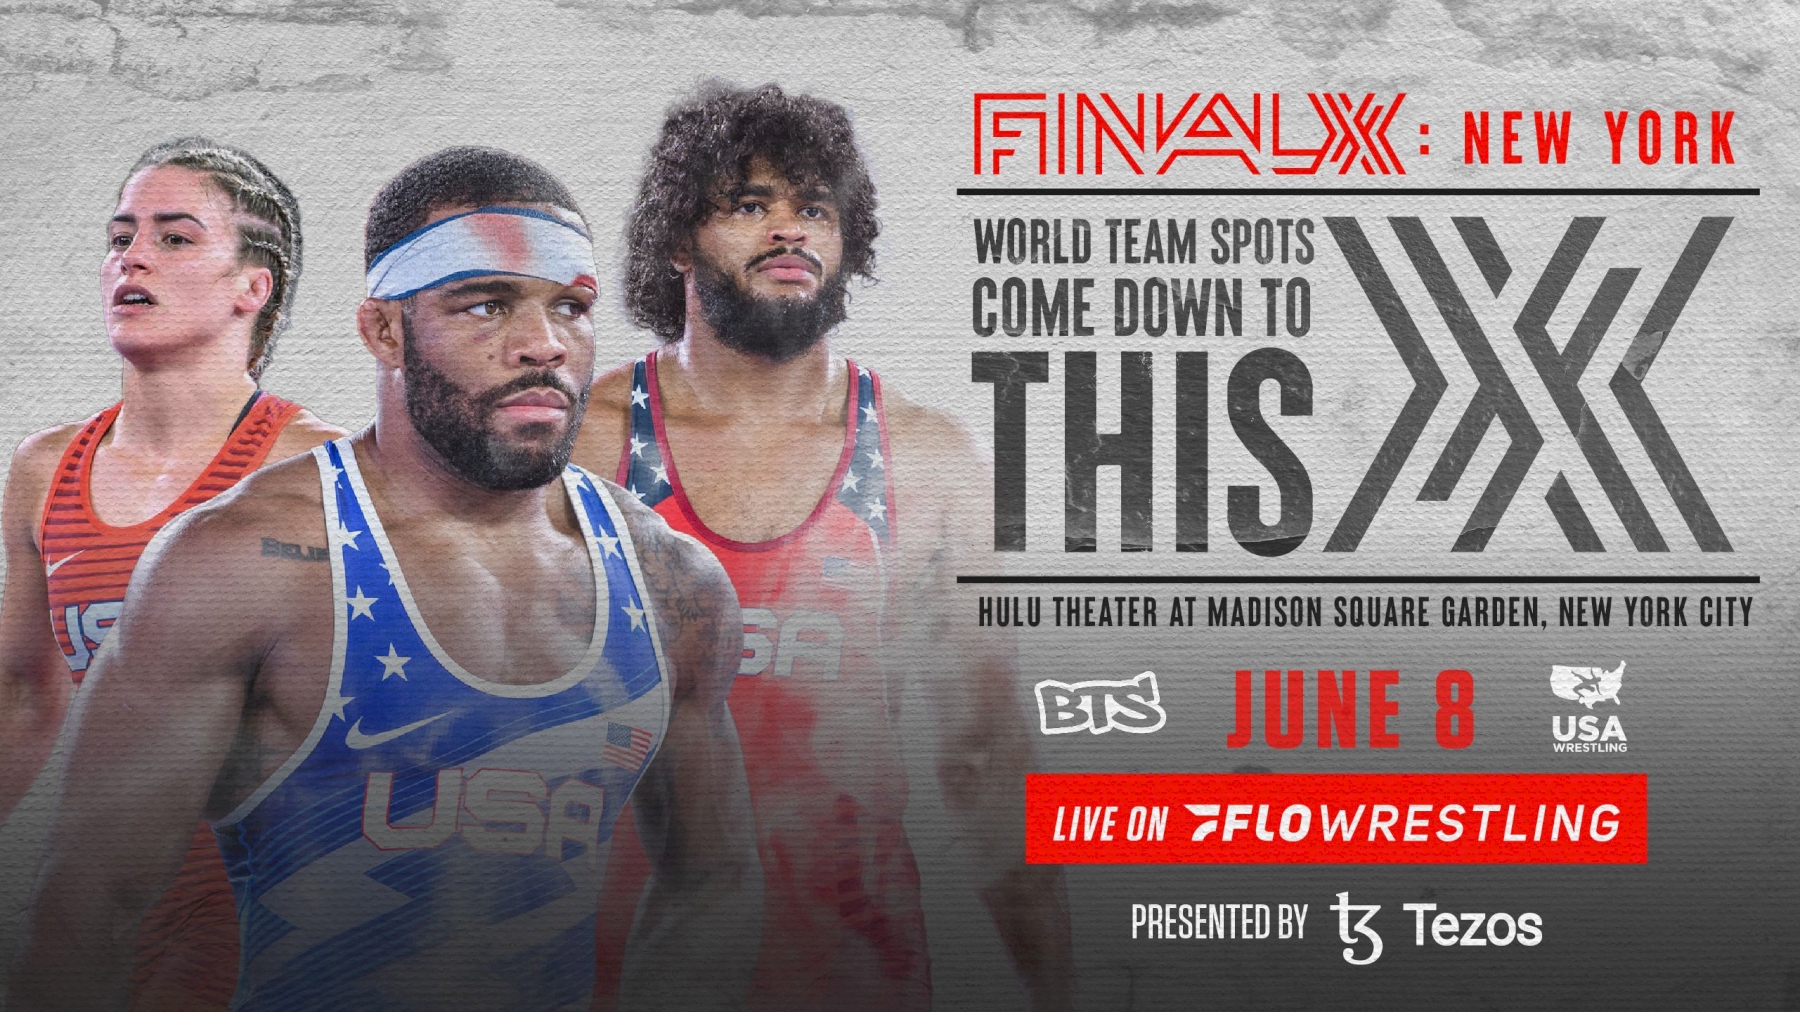 2022 Final X NYC Wrestling Event FloWrestling